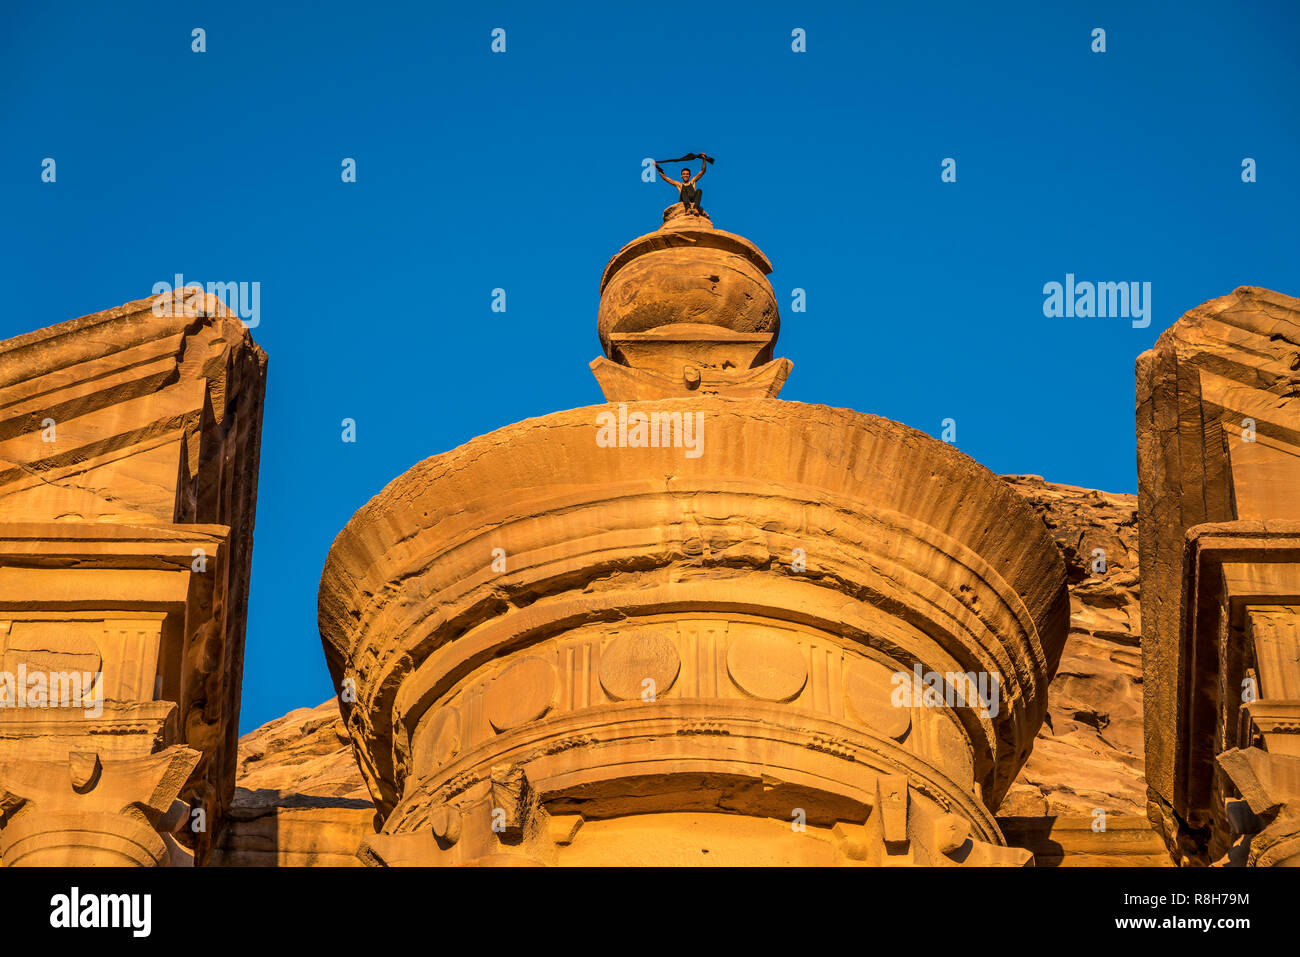 Besucher klettert auf die Urne auf der Spitze des Felsentempel Kloster annuncio Deir, Petra, Jordanien, Asien | Arrampicata turistica l urna sulla parte superiore del Foto Stock